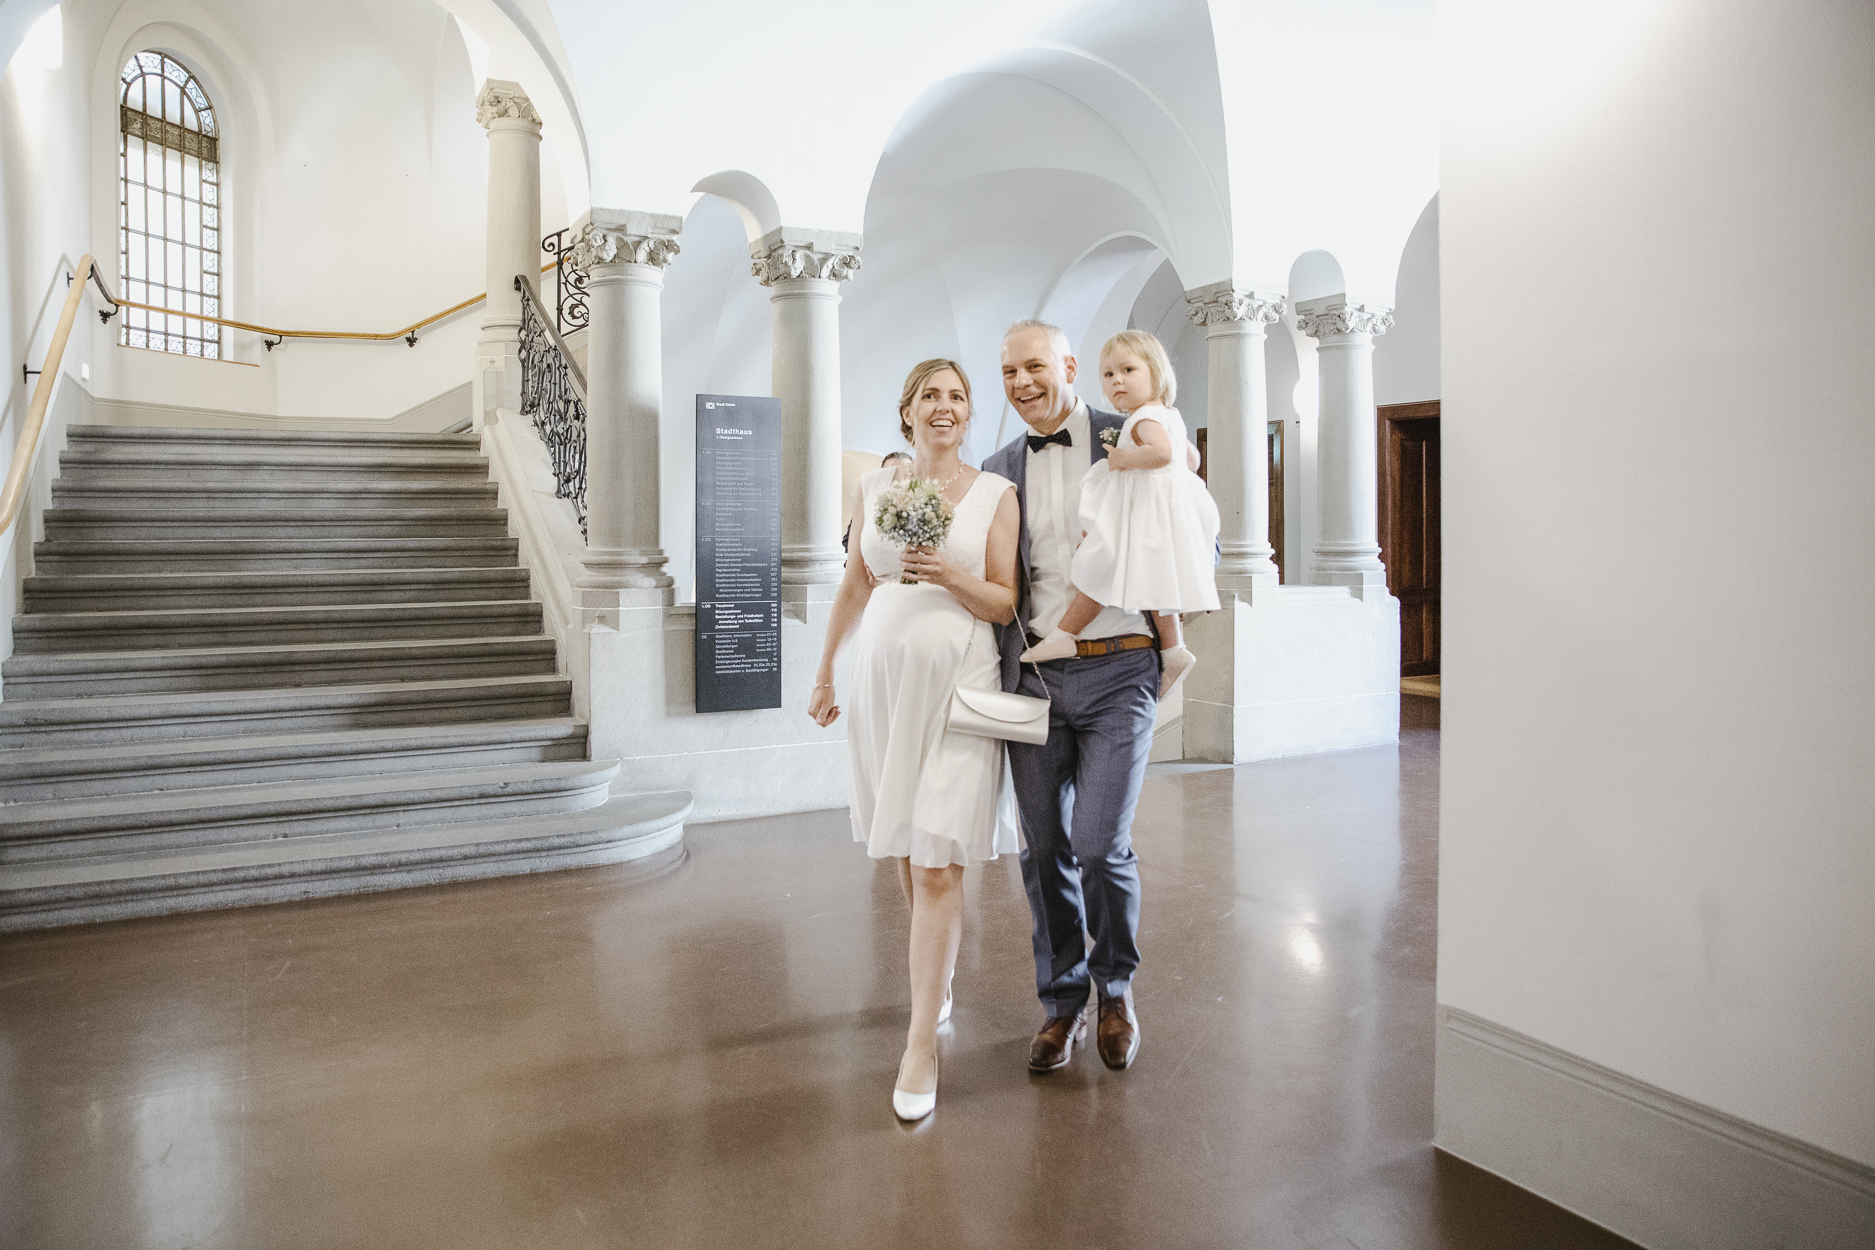 Zivile Hochzeit im Stadthaus Zürich, Gang zur Dokumenteprüfung... gleich geht es los